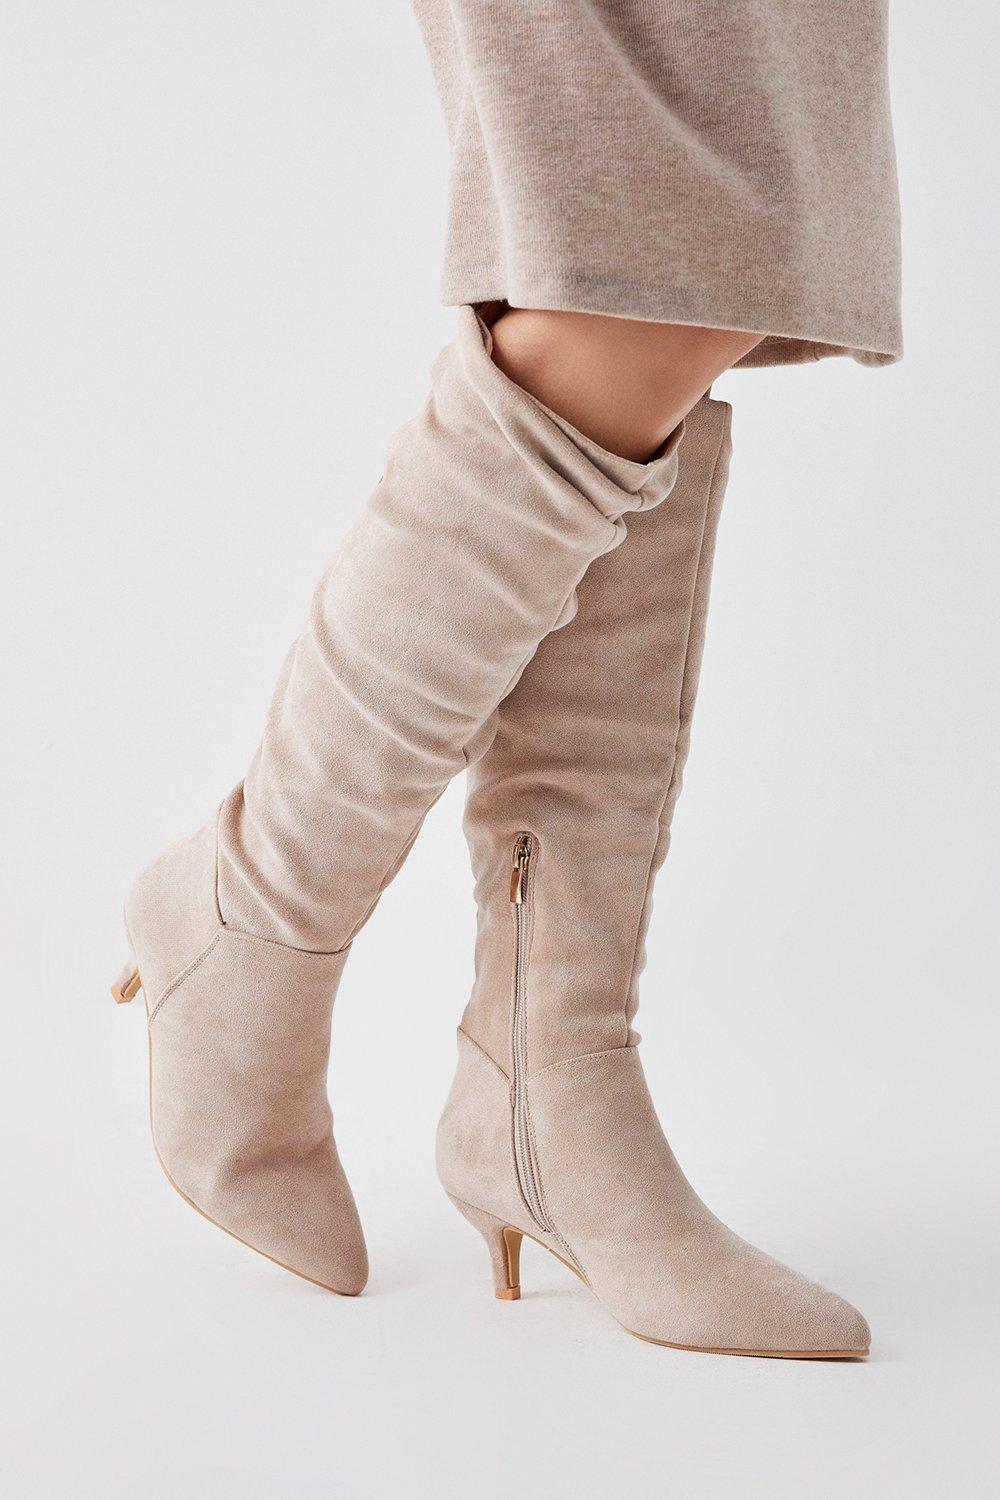 Women’s Khloe Knee High Low Heel Ruched Boots - beige - 7